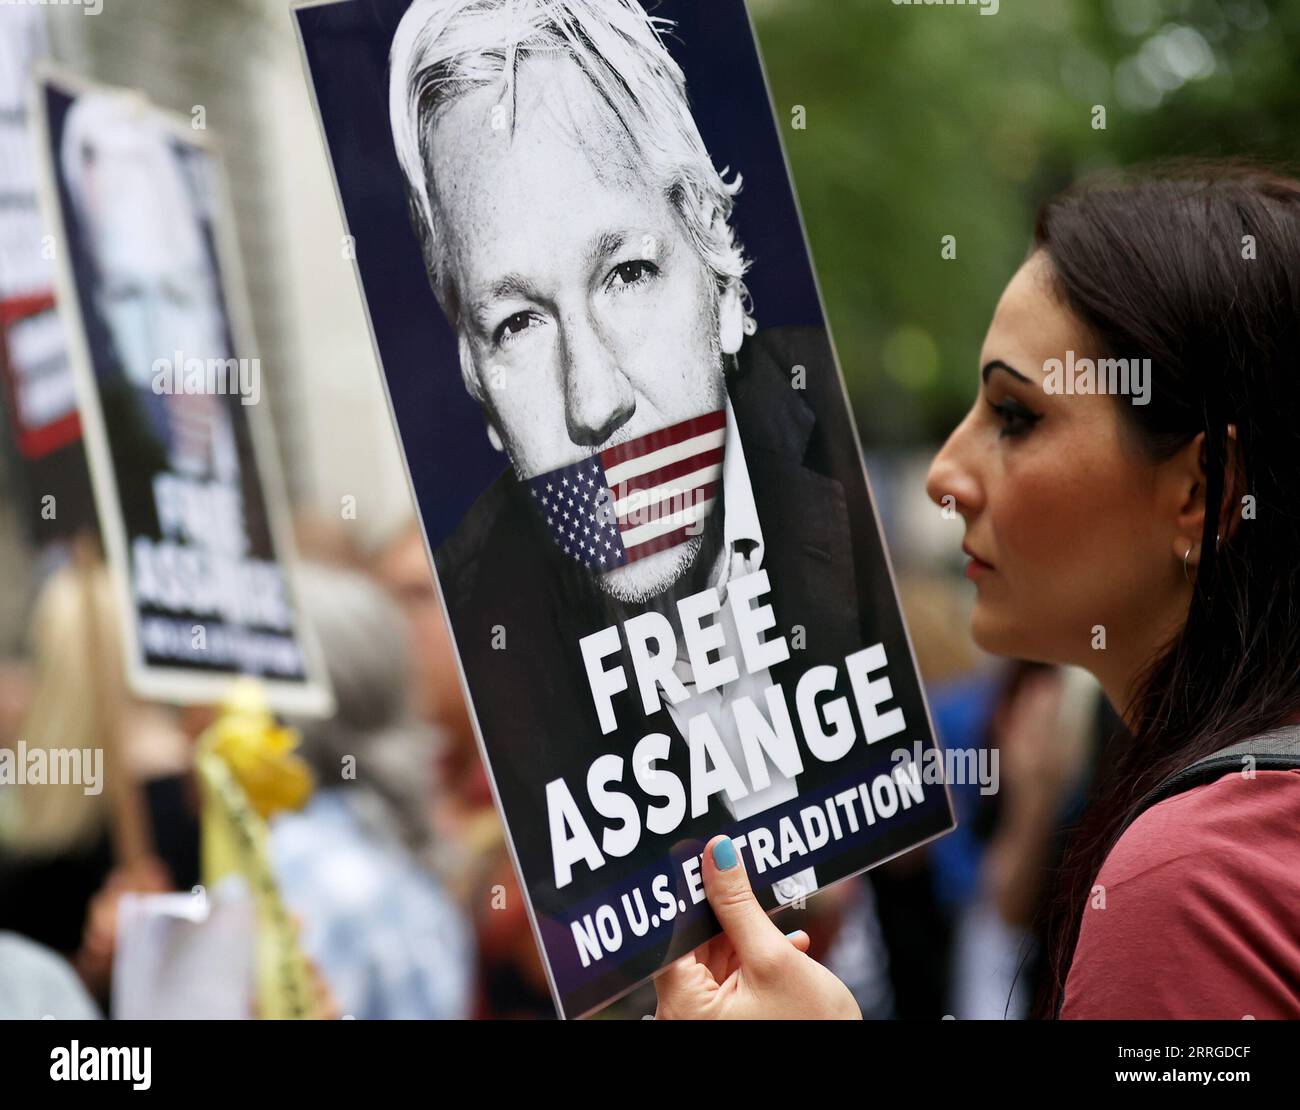 220518 -- LONDRES, le 18 mai 2022 -- Un partisan de Julian Assange est vu devant le Home Office britannique à Londres, le 17 mai 2022. Des centaines de personnes se sont rassemblées devant le Home Office britannique mardi pour protester contre l’extradition du fondateur de WikiLeaks Julian Assange vers les États-Unis, la dénonçant comme politiquement motivée et comme une grave menace pour la liberté de la presse. BRITAIN-LONDRES-ASSANGE-PROTEST LixYing PUBLICATIONxNOTxINxCHN Banque D'Images